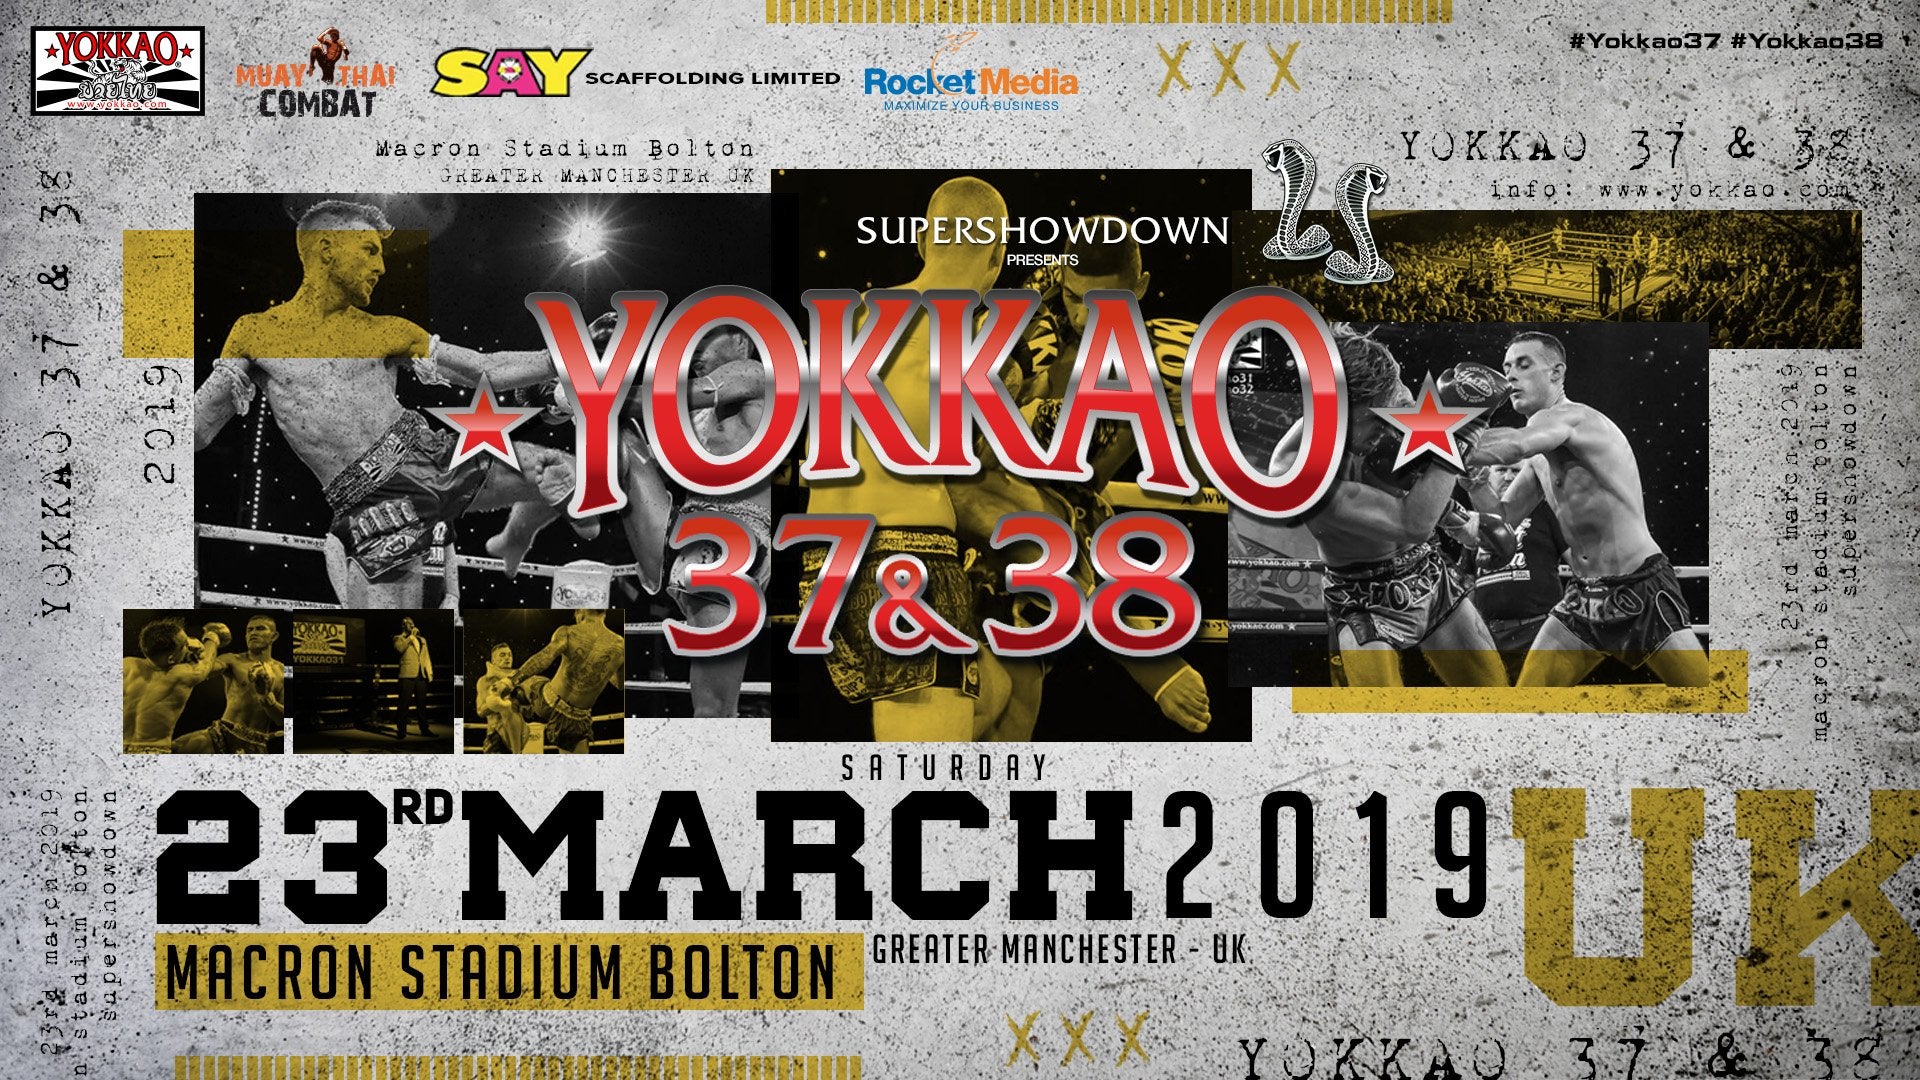 YOKKAO 37 - 38 Returns to UK on 23rd March 2019